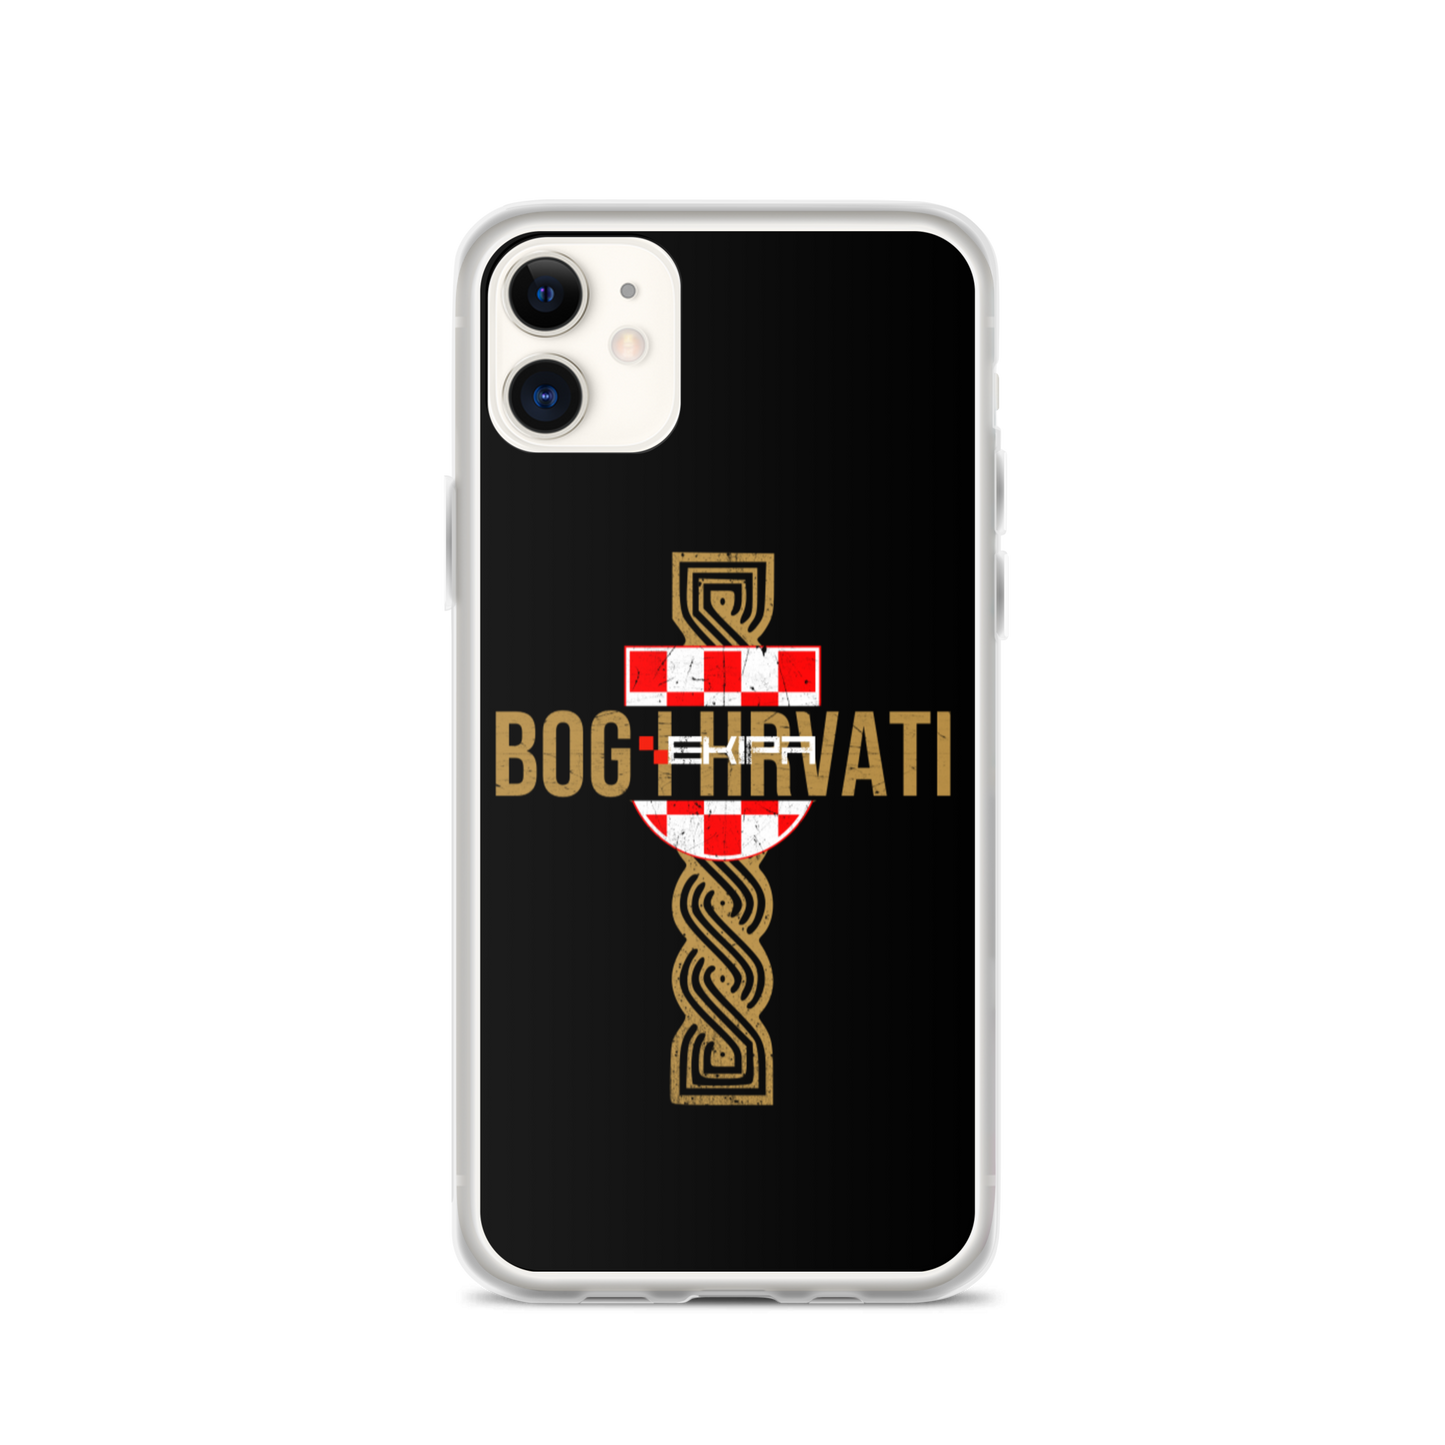 "Bog i Hrvati x Pleter" - iPhone case